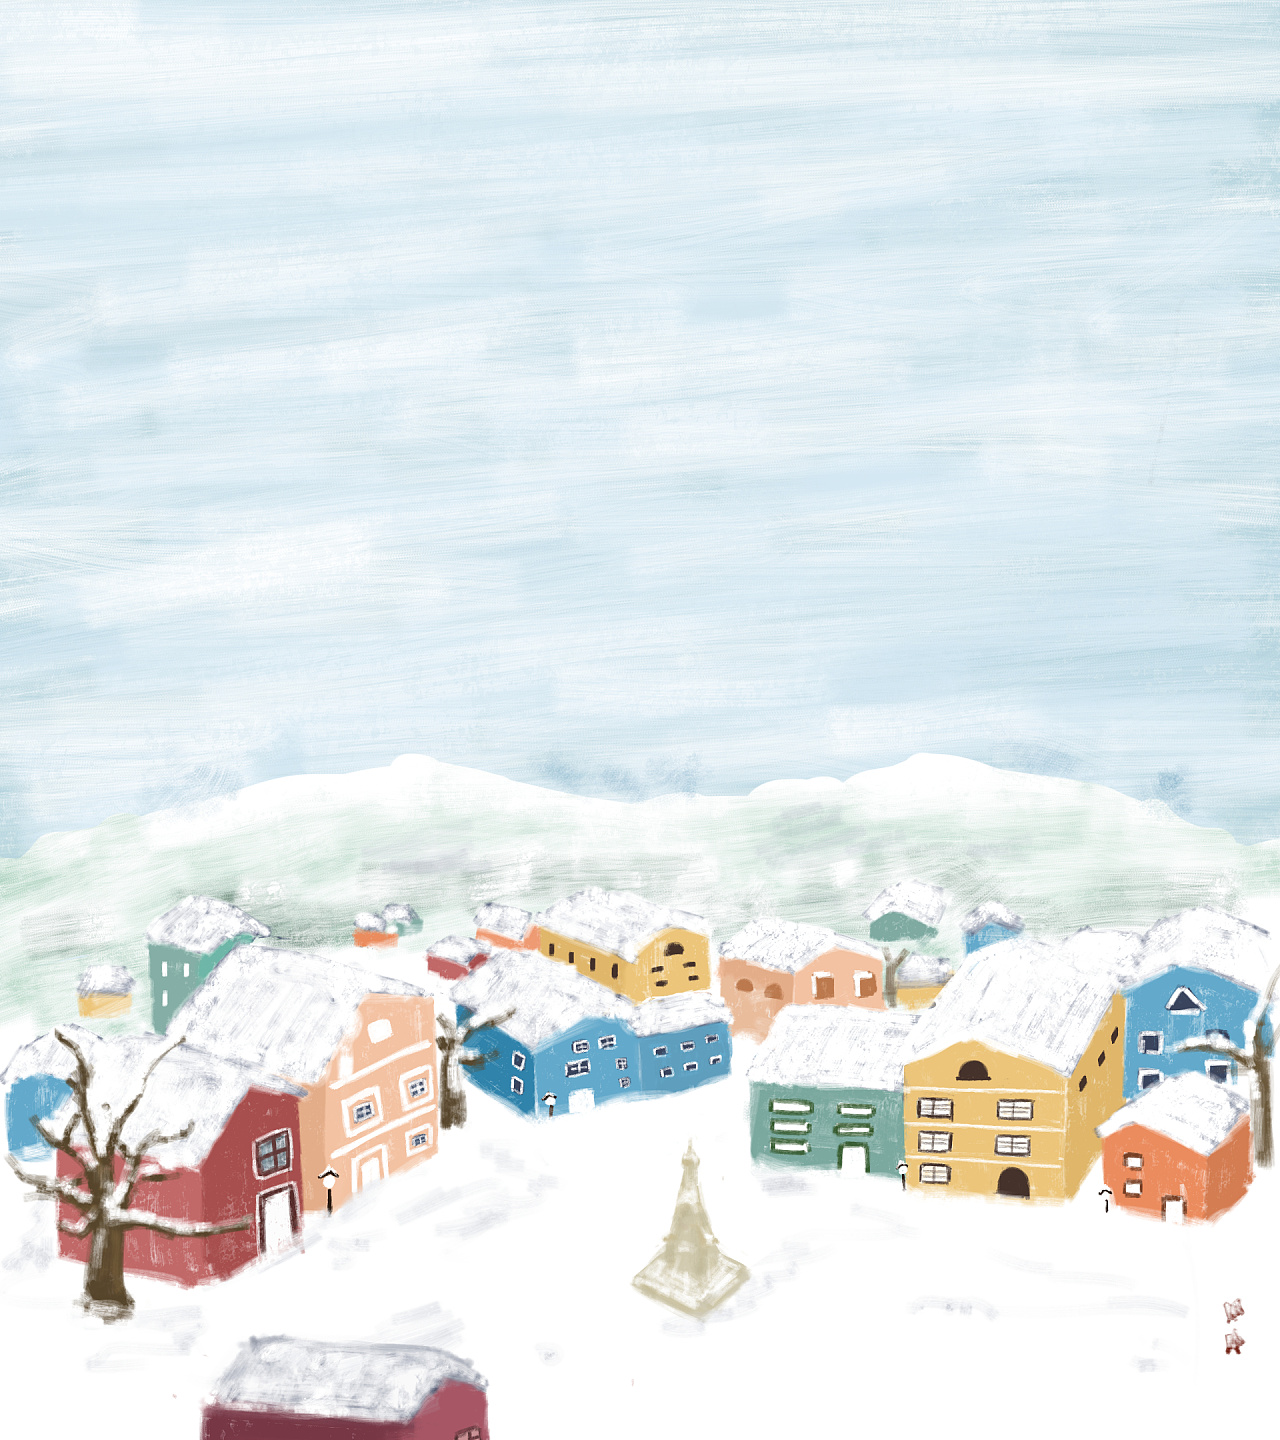 冬天躺在雪地上的女子 黑色皮草 红色手套 小狗 高清动漫壁纸壁纸(动漫静态壁纸) - 静态壁纸下载 - 元气壁纸